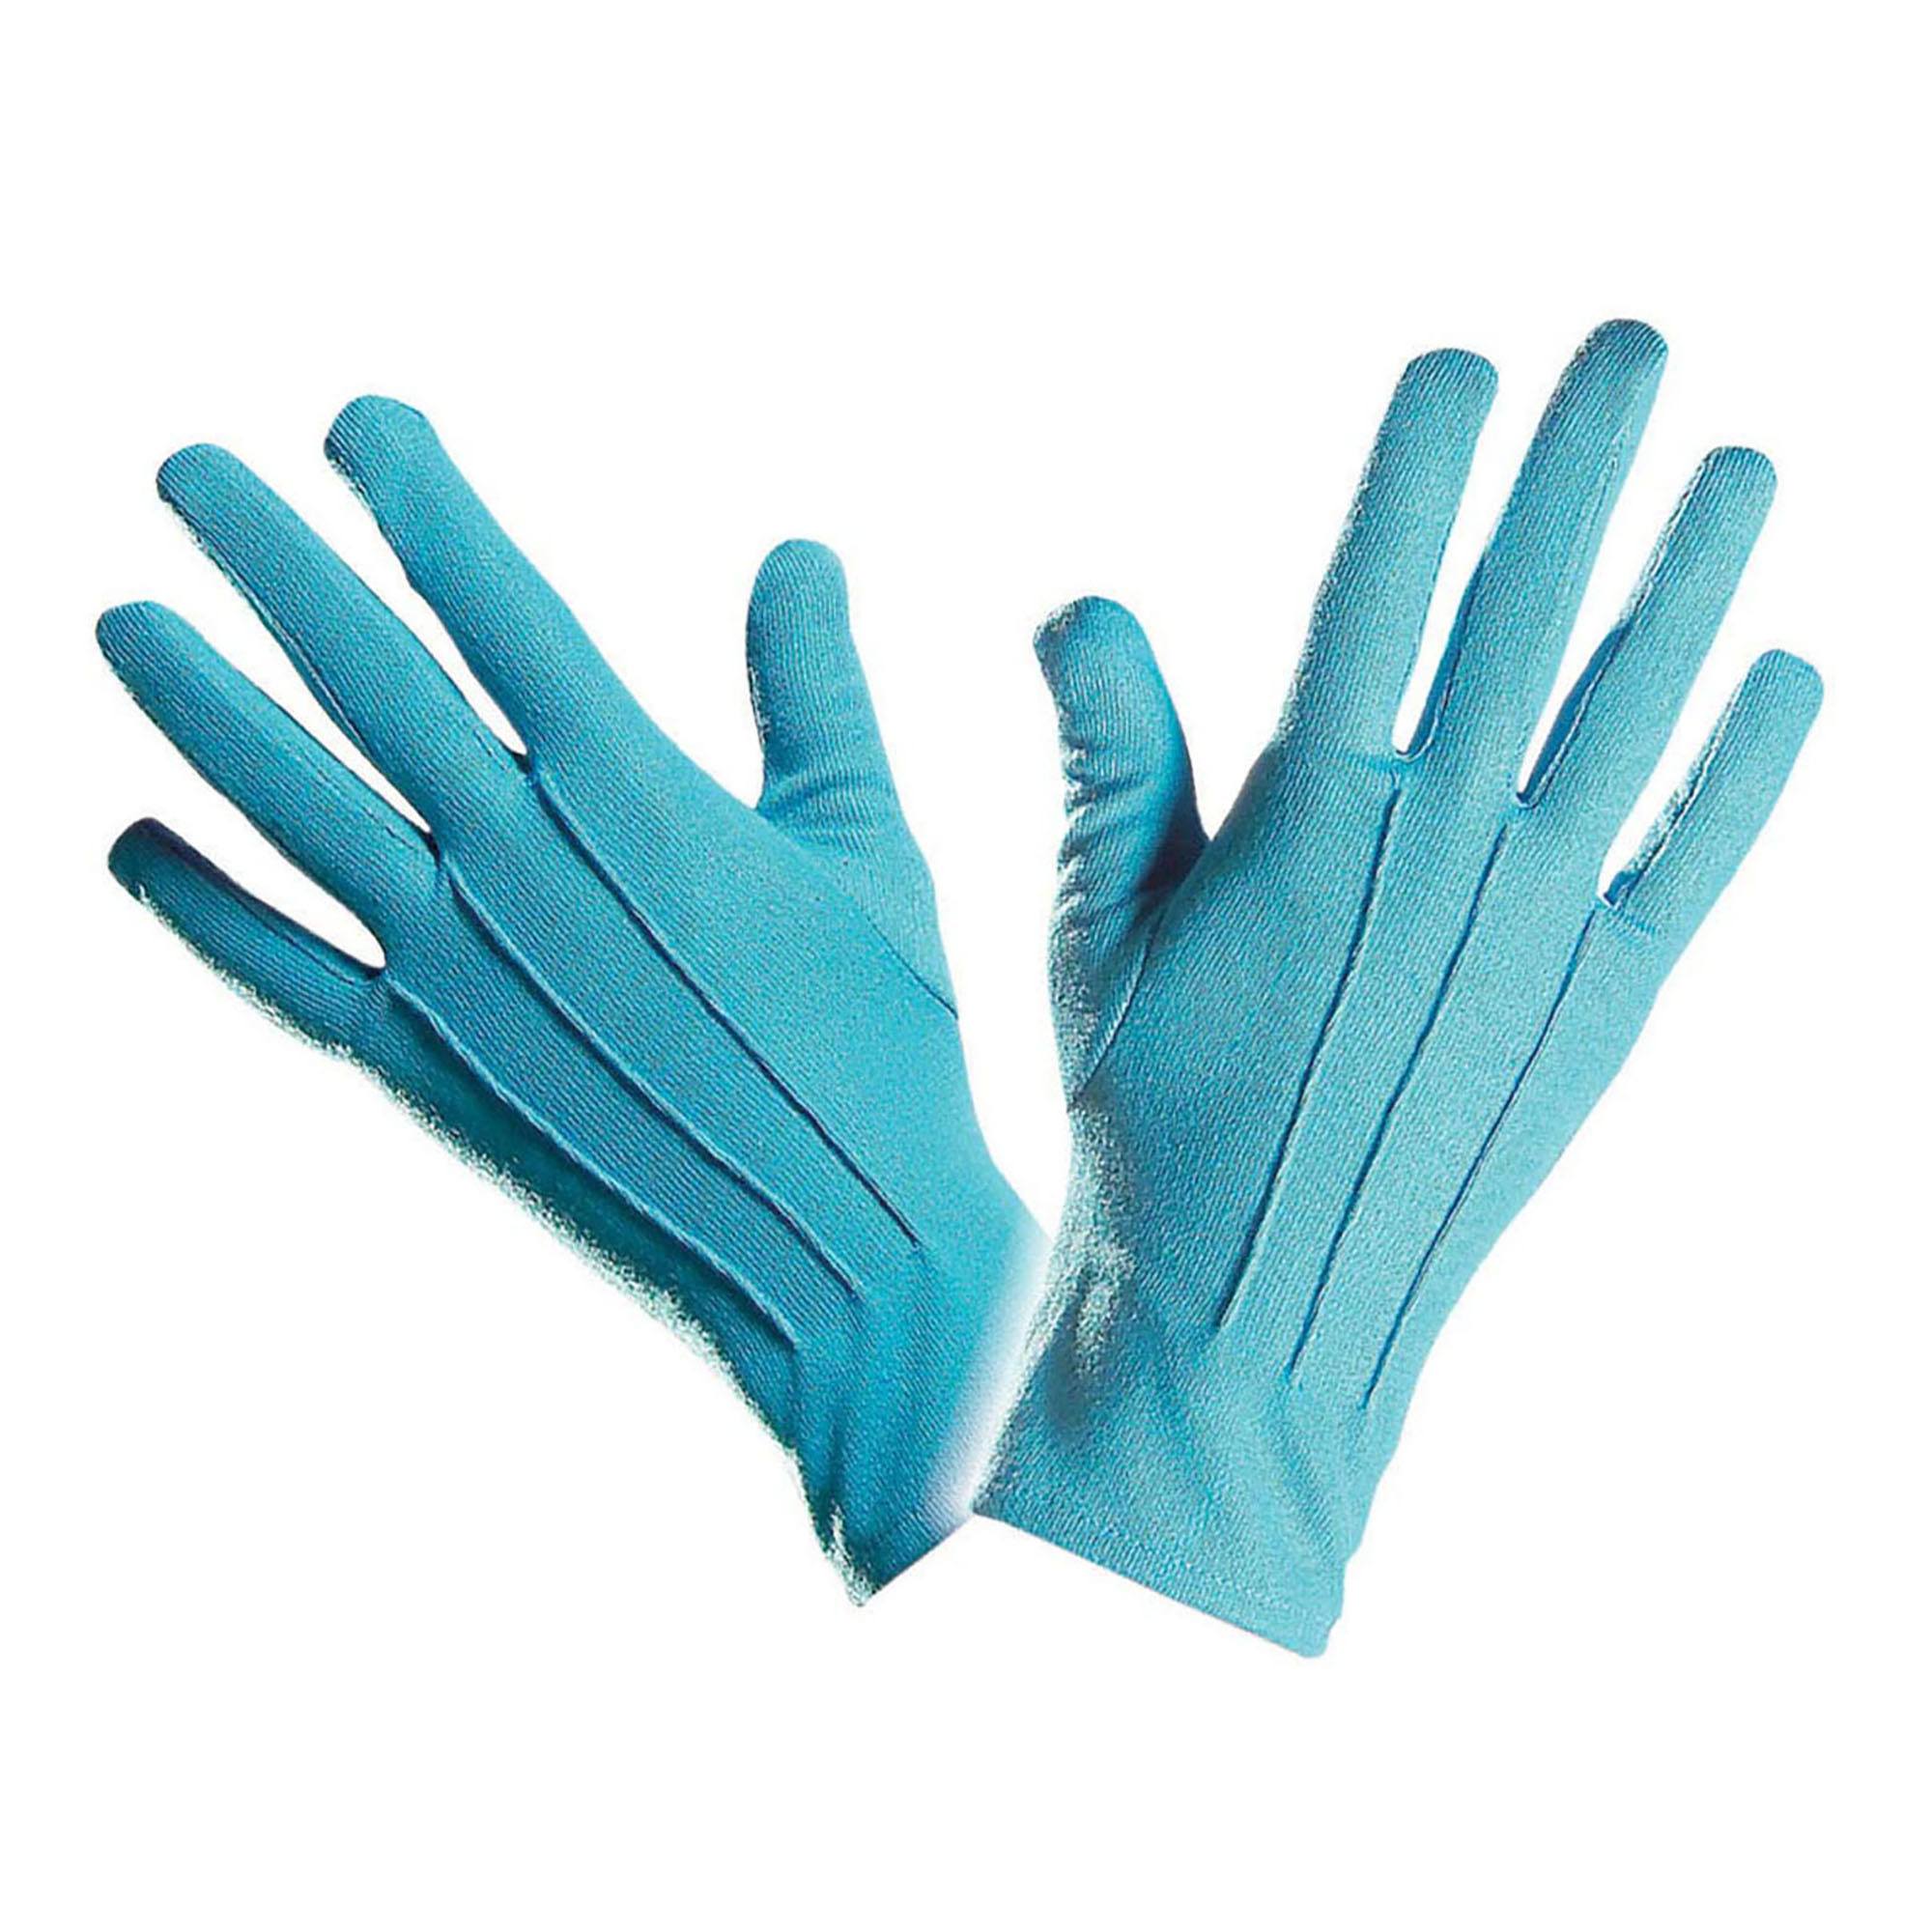 Handschoenen blauw in de kleur van de smurfen